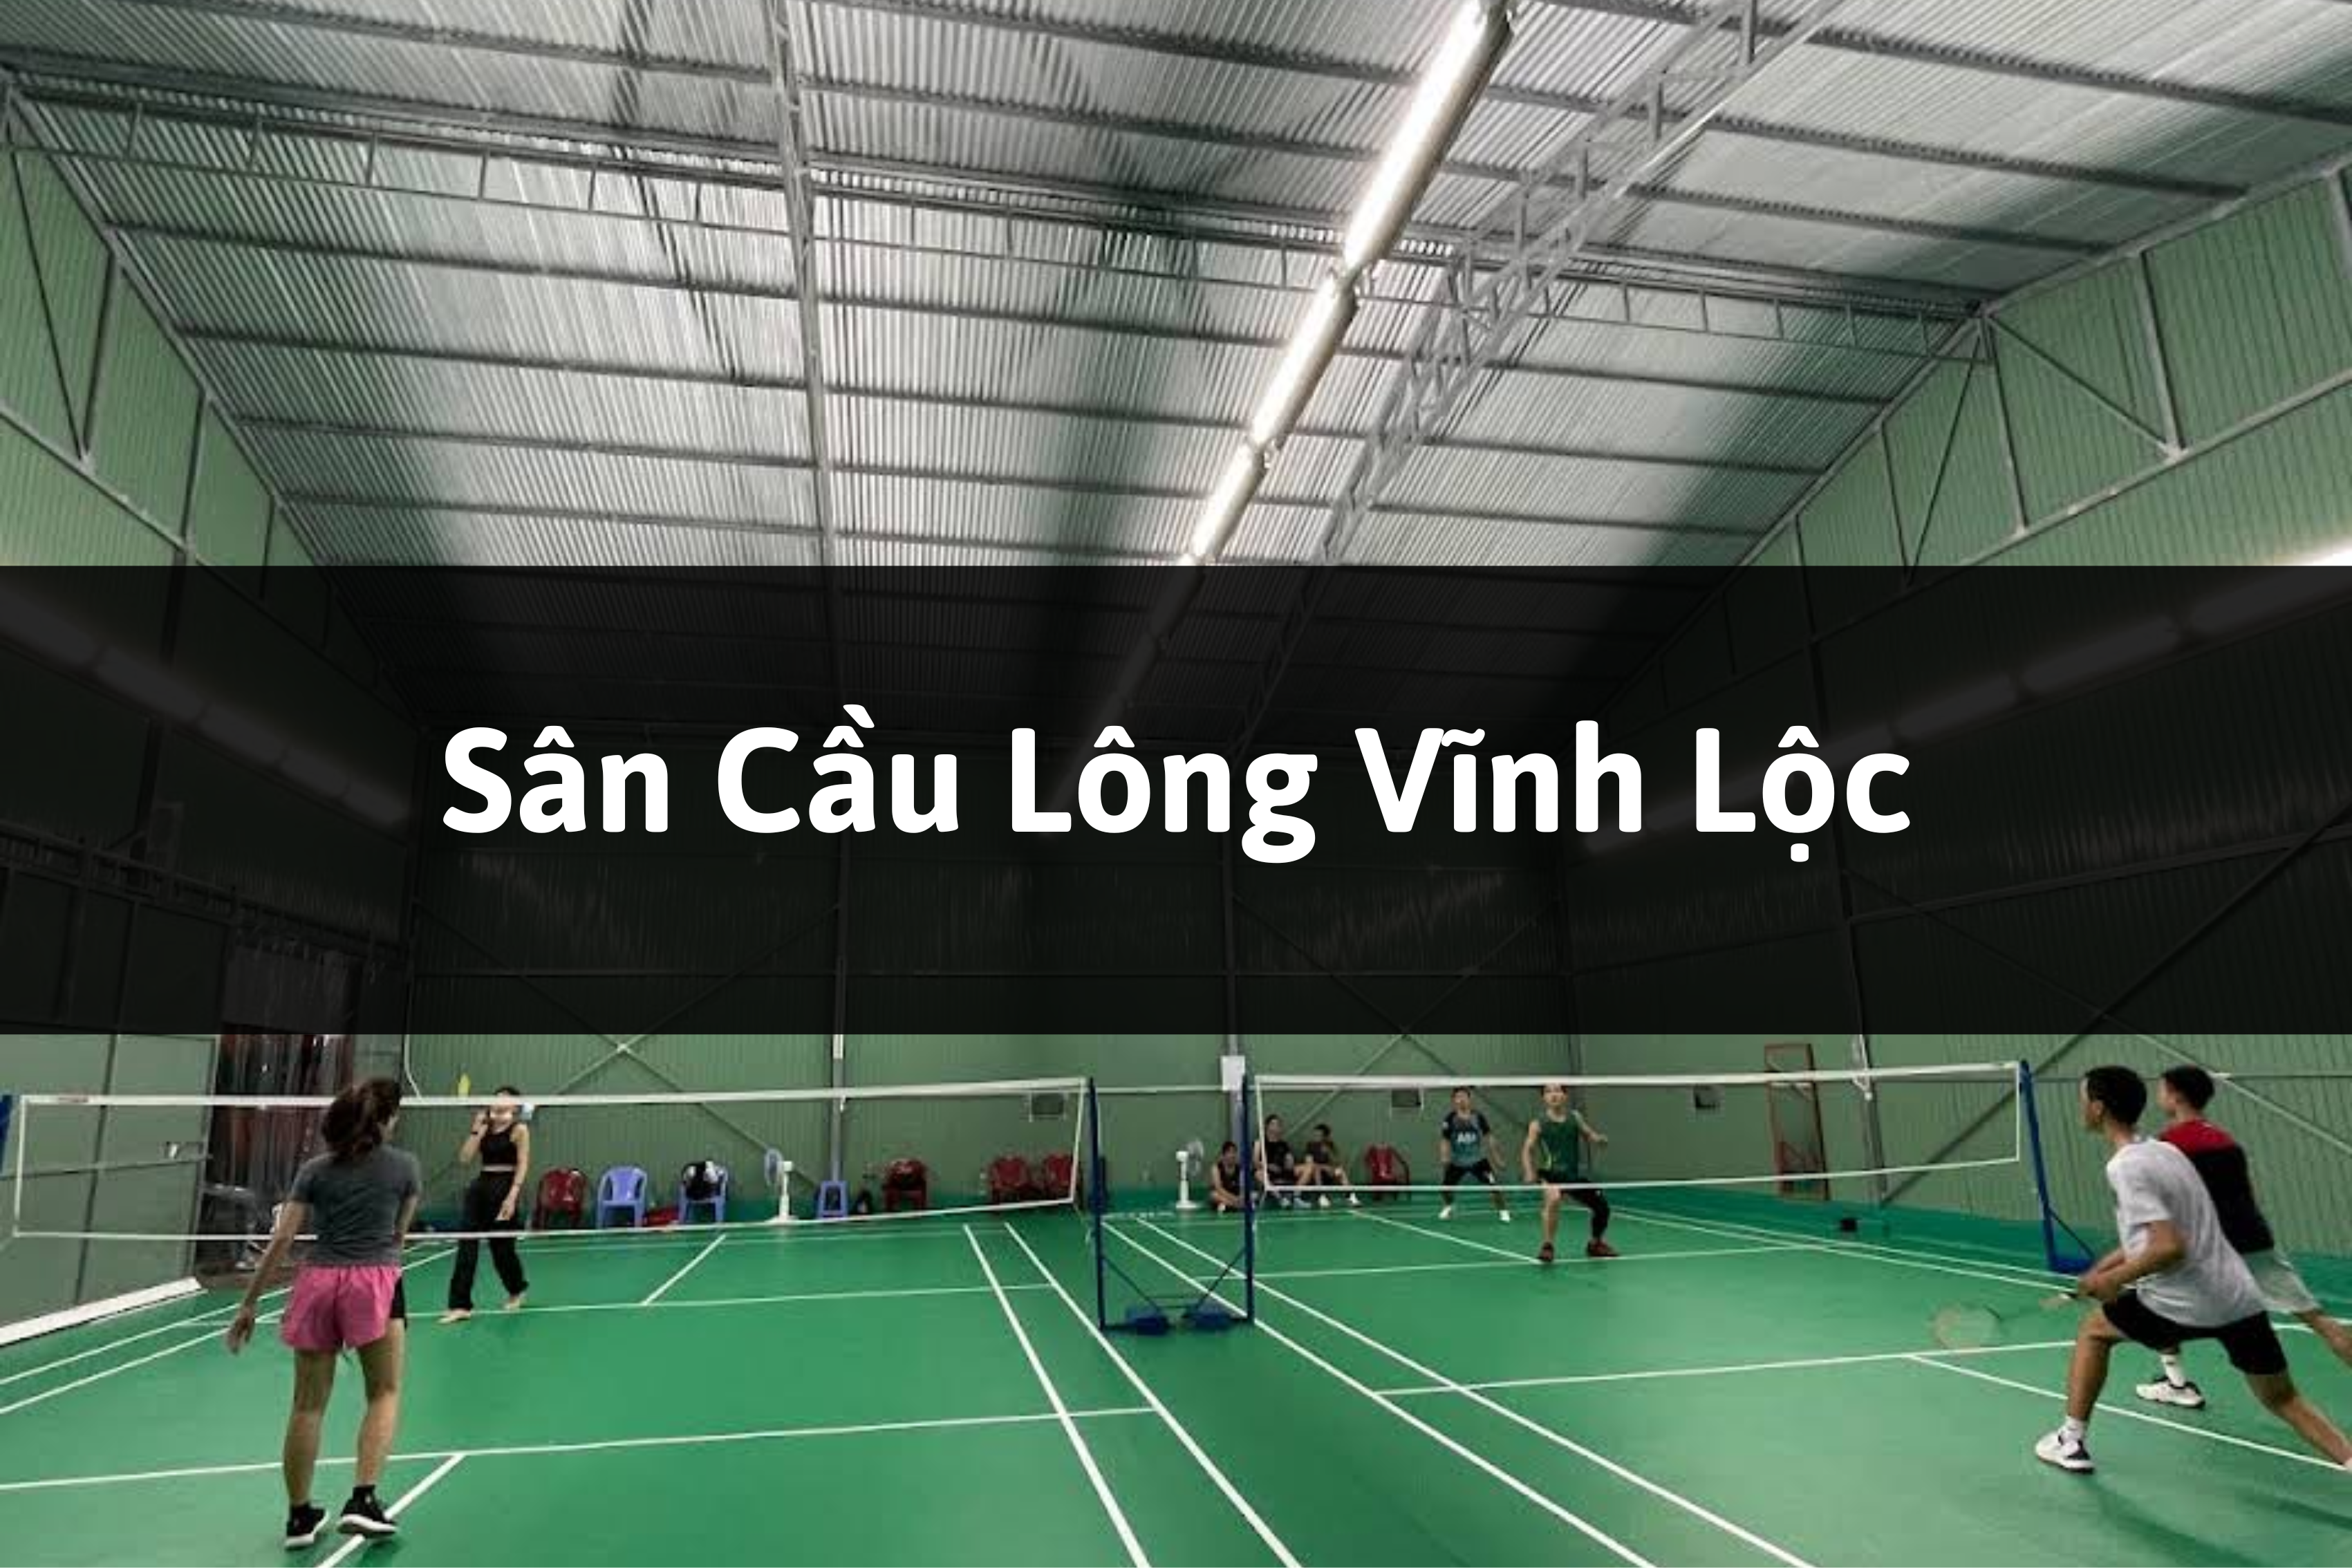 Sân cầu lông Đồng Đội, Bình Tân, TP. Hồ Chí Minh